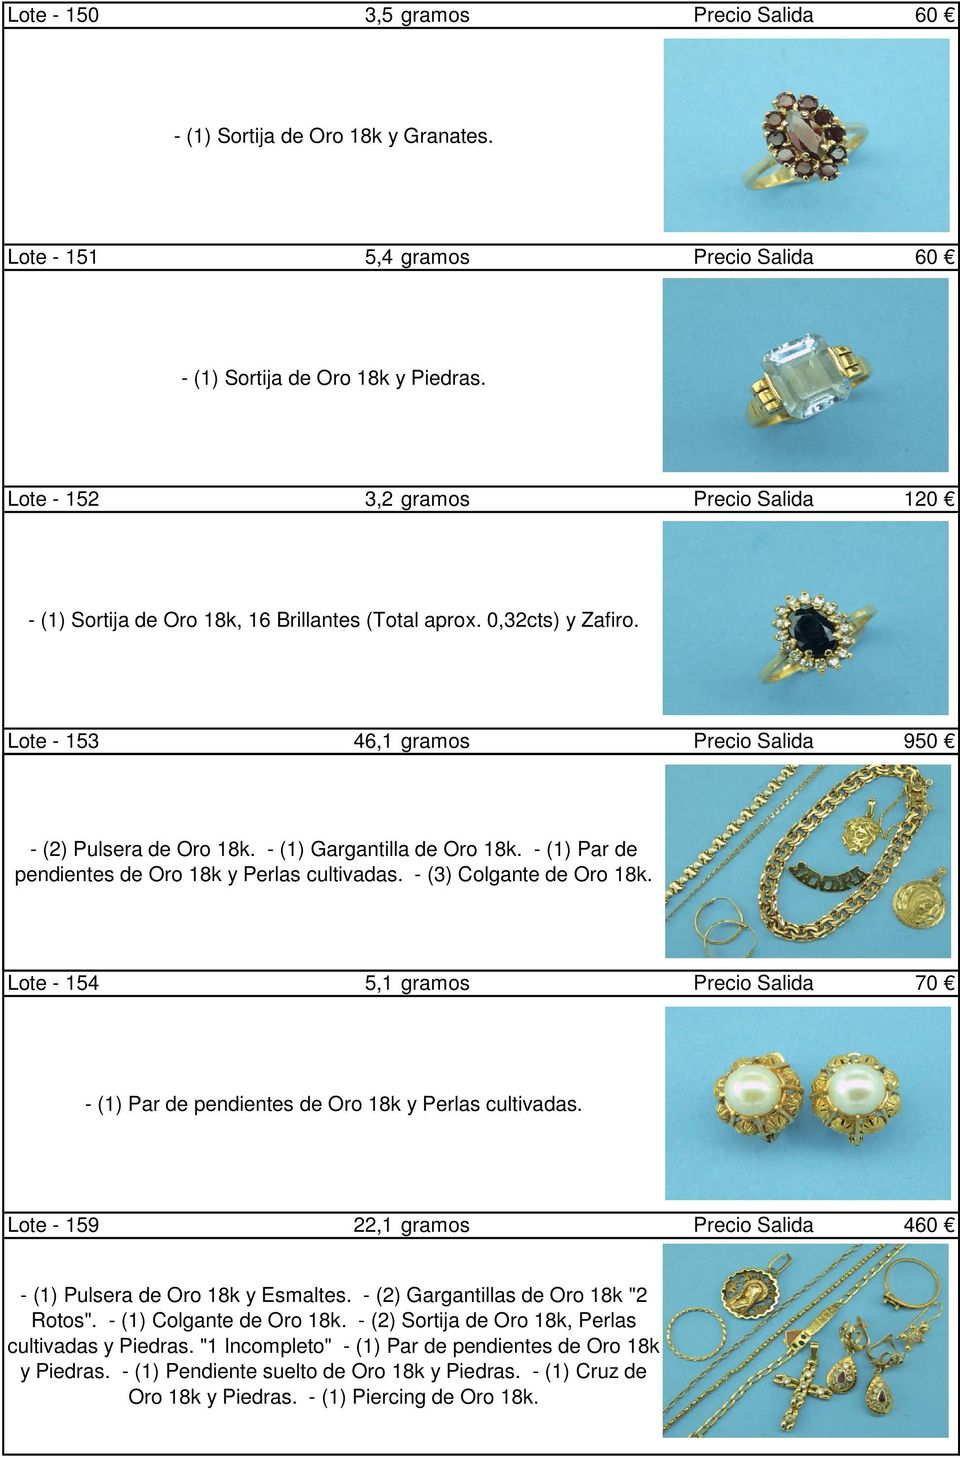 - (1) Gargantilla de Oro 18k. - (1) Par de pendientes de Oro 18k y Perlas cultivadas. - (3) Colgante de Oro 18k.